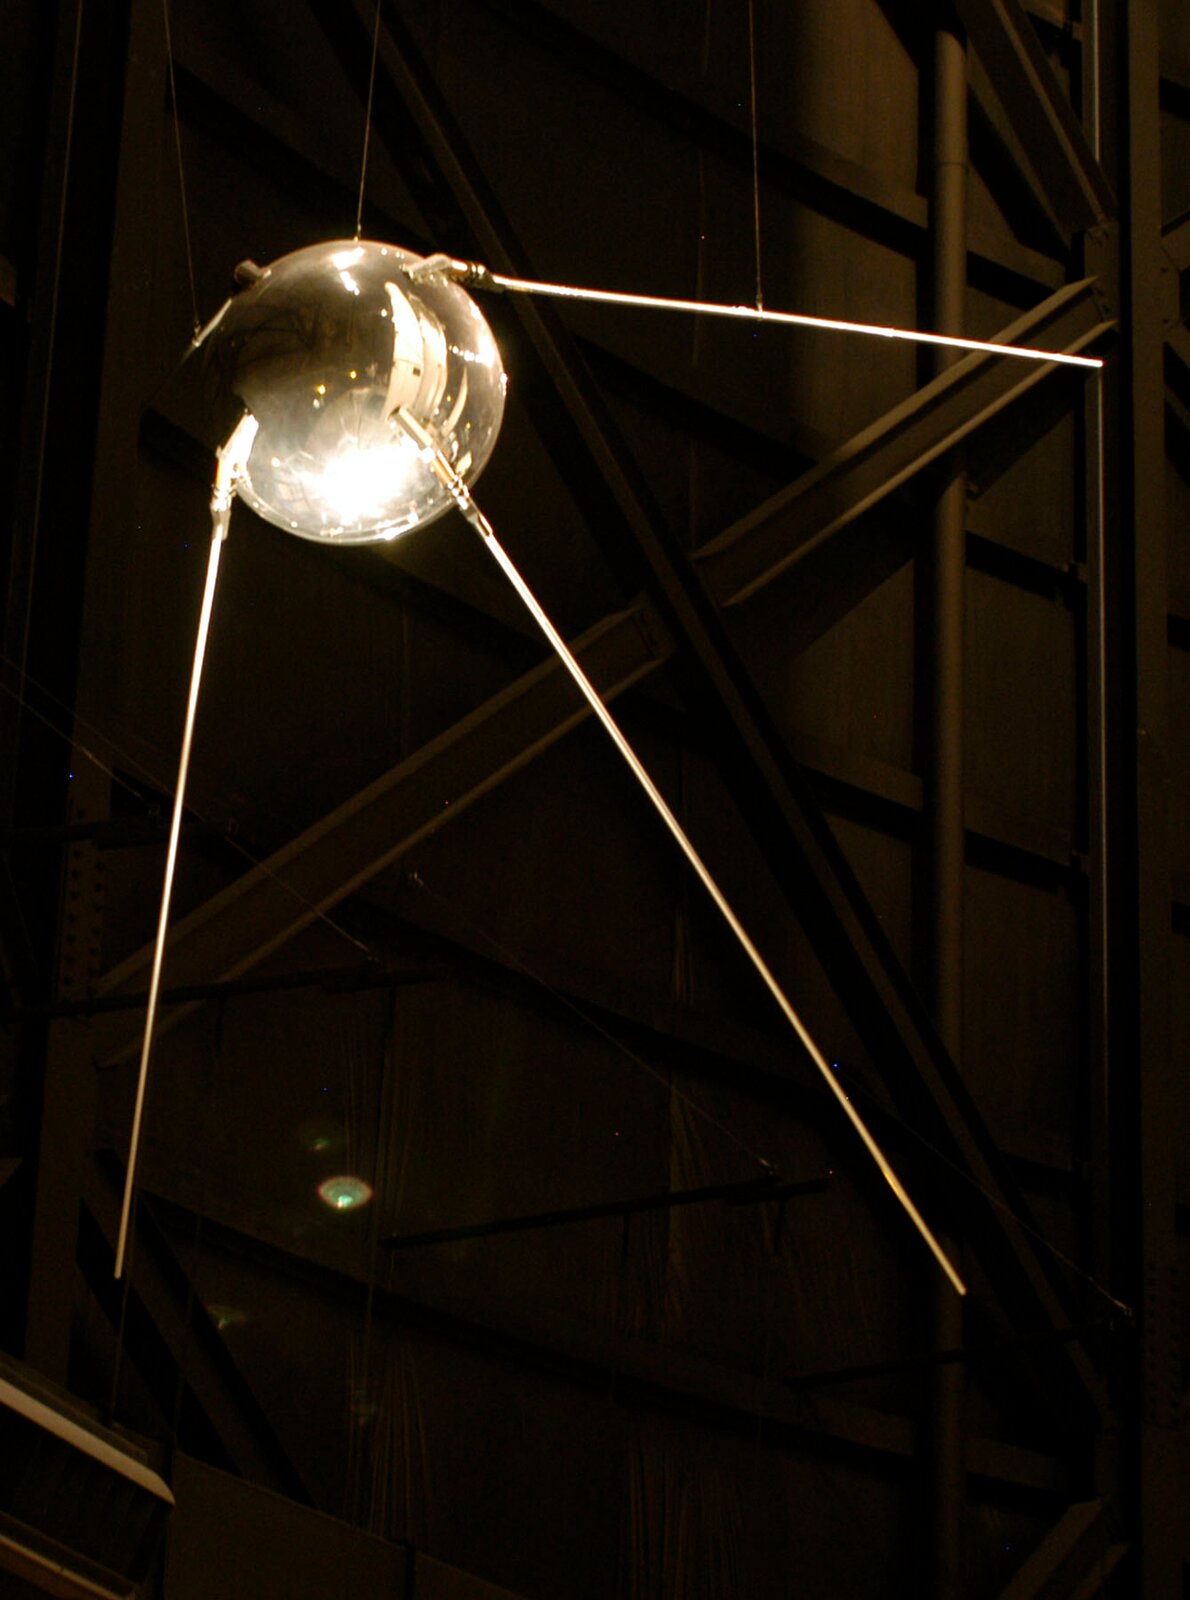 Zdjęcie przedstawia pierwszego sztucznego satelitę Ziemi – SPUTNIK 1. Tło ciemne, prawie czarne. Na zdjęciu widoczne urządzenie przypominające dużą, srebrną kulę z trzema cienkimi „nóżkami” odchodzącymi od niej. Powierzchnia błyszcząca.